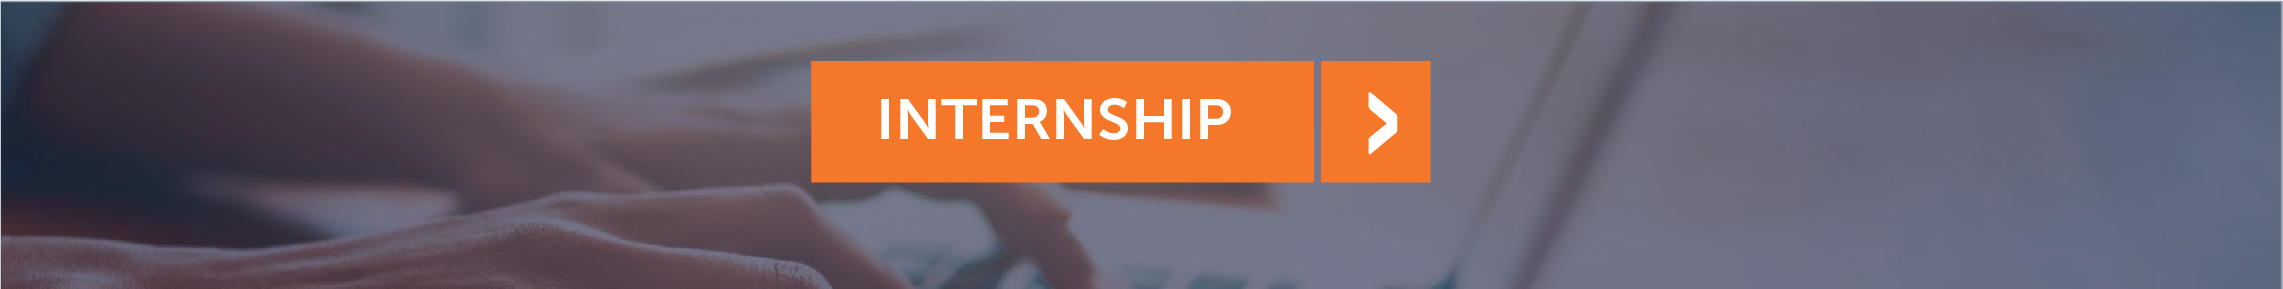 click internship information